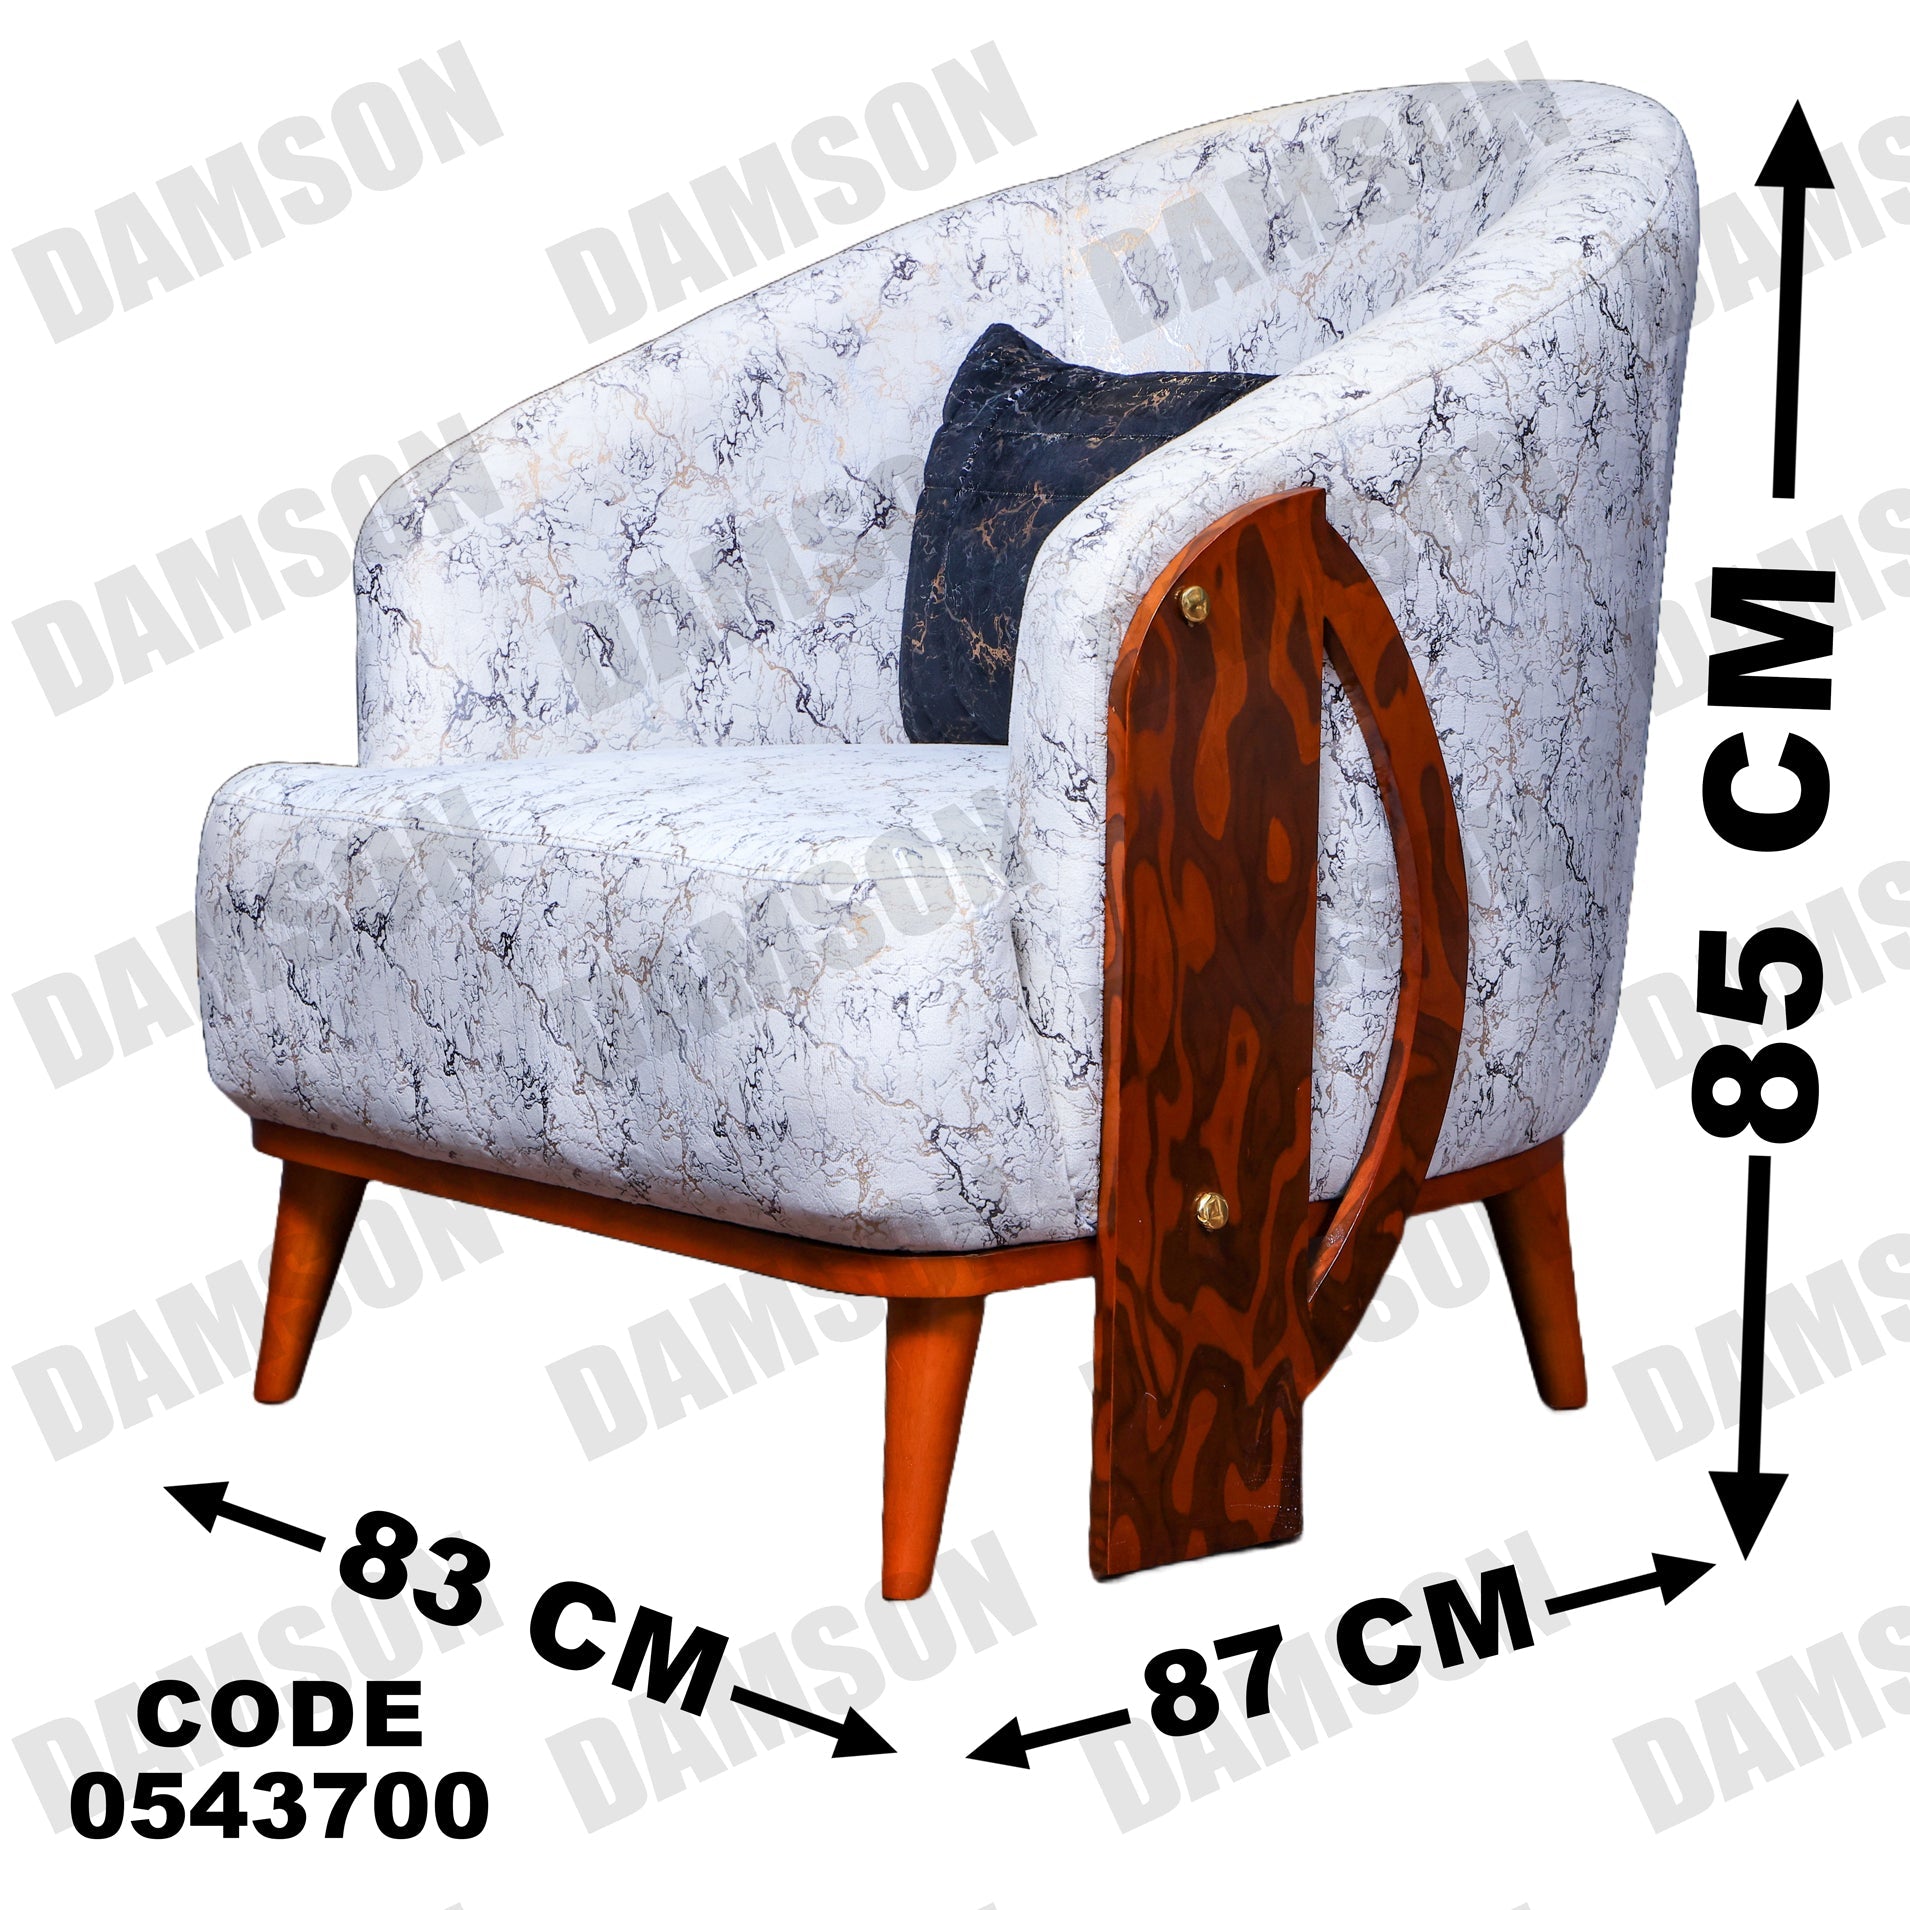 فوتية 2-437 - Damson Furnitureفوتية 2-437